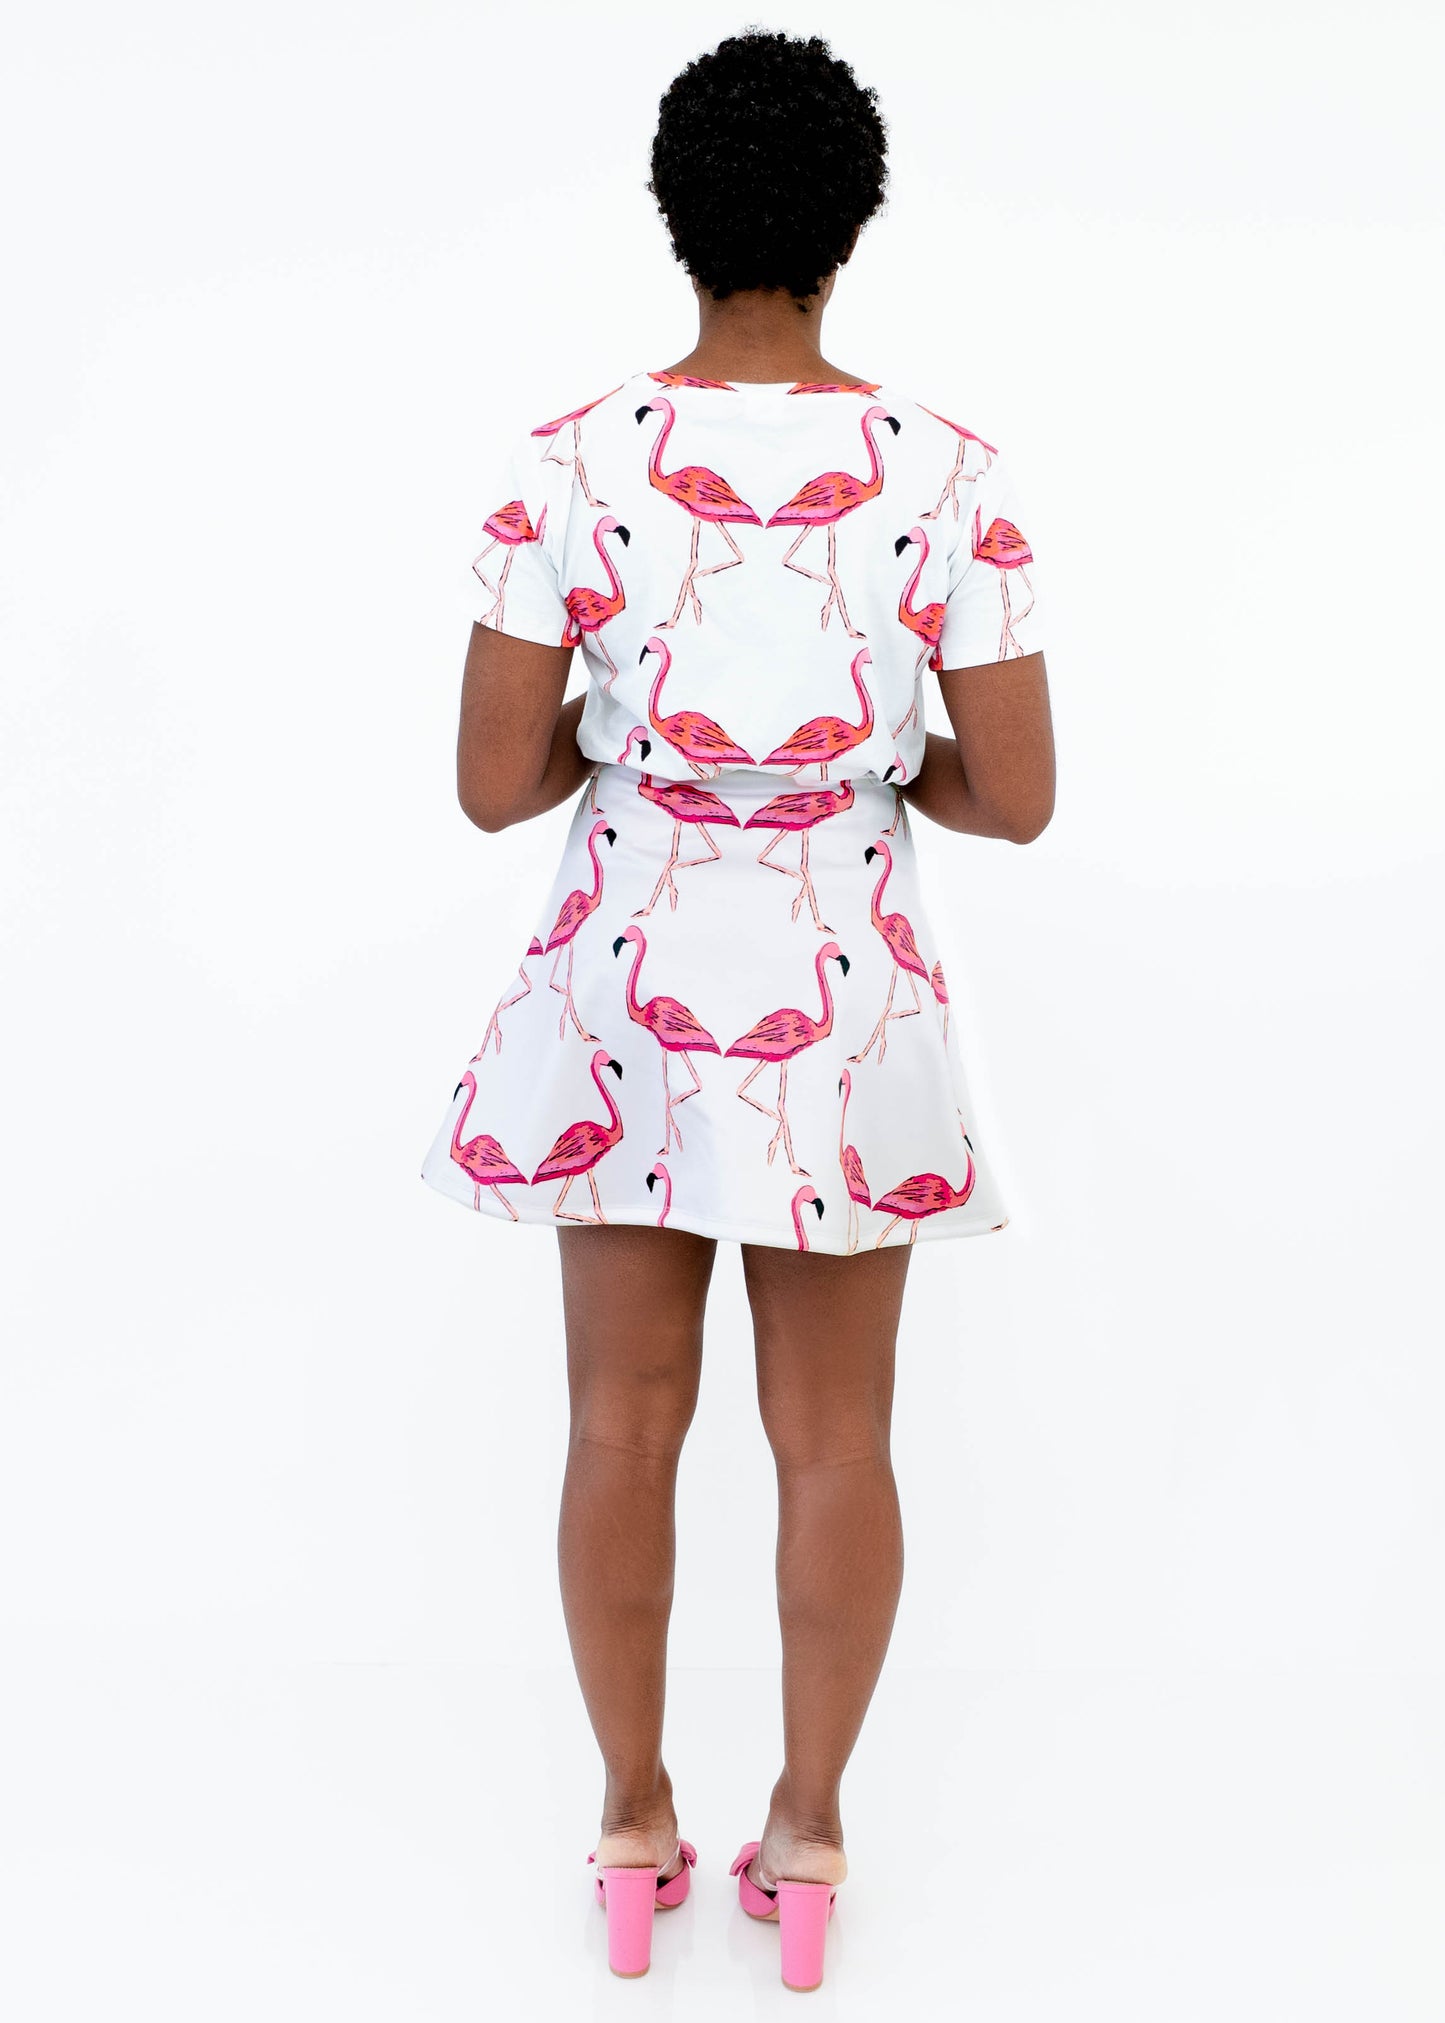 Scuba Knit Mini Skirt - Let's Flamingle Flamingos Print